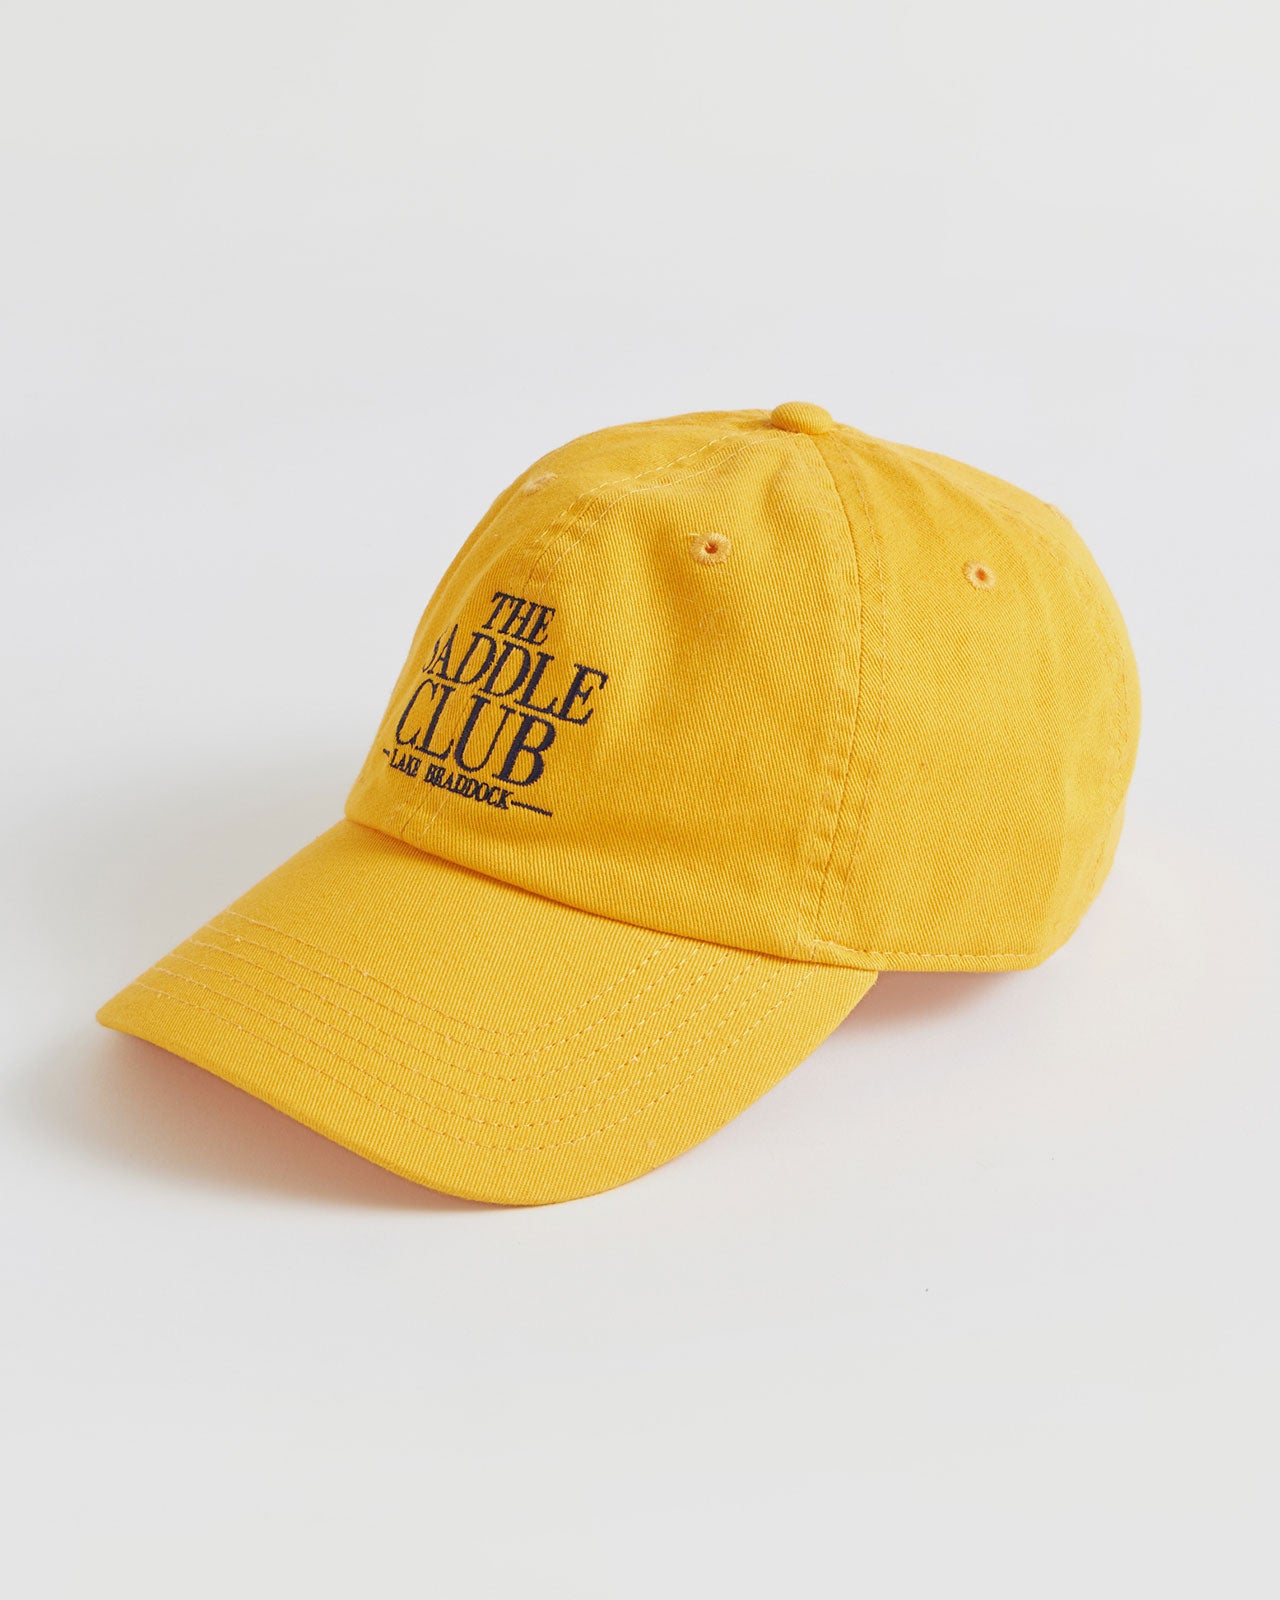 SADDLE CLUB CAP – Shinzone